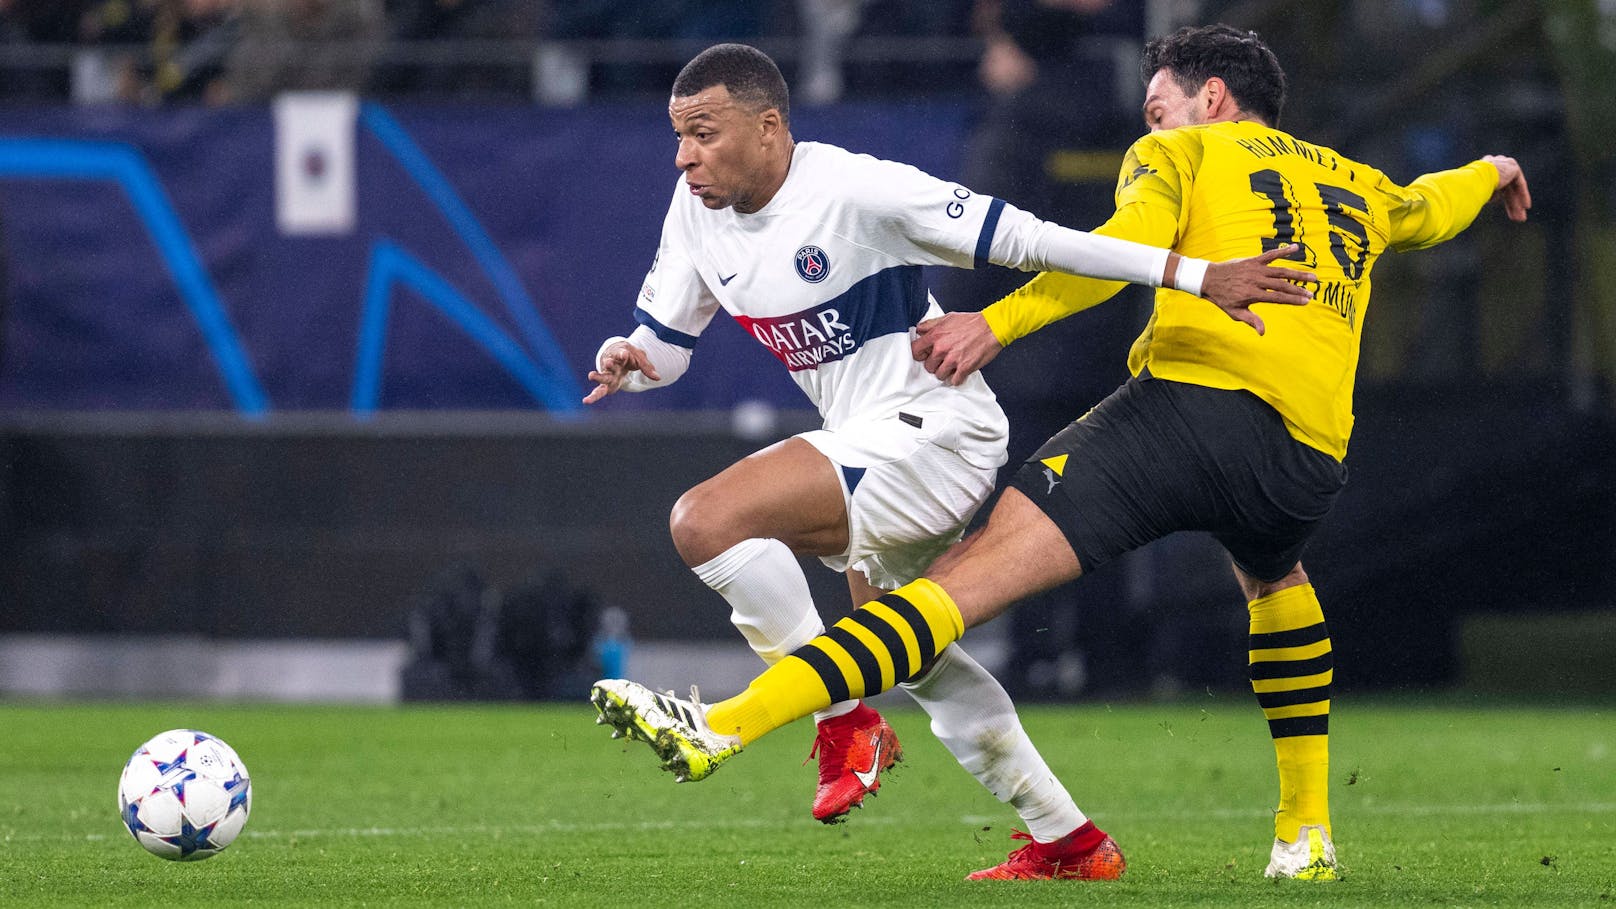 Paris zittert sich mit 1:1 gegen Dortmund weiter